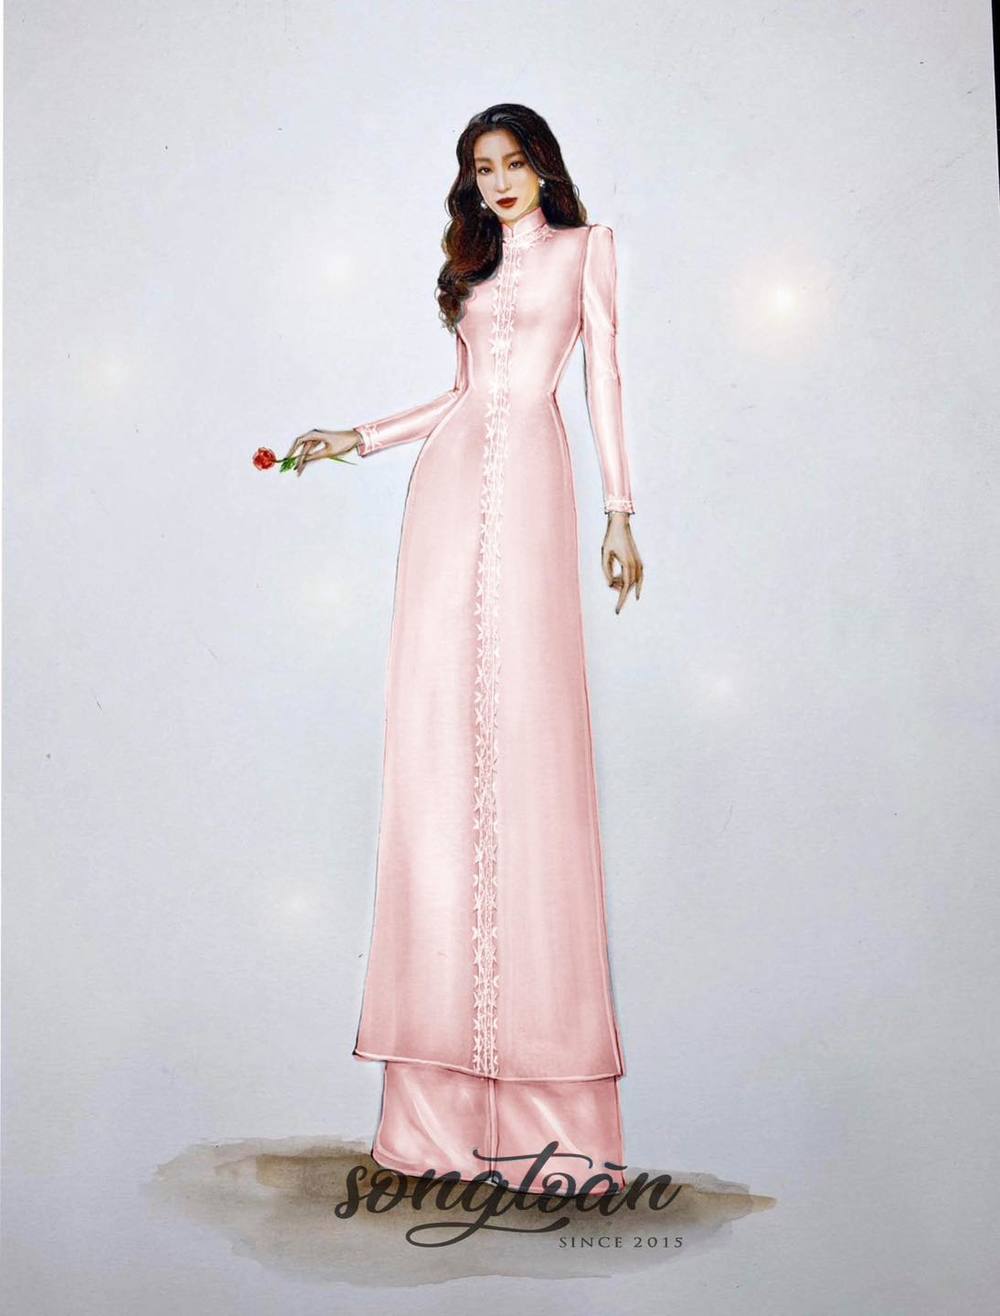 Nhìn lại những trang phục cưới của Đỗ Mỹ Linh trong ngày 'về làm dâu hào môn': áo dài trang nhã, thanh lịch, váy cưới cổ điển đầy sang trọng - Ảnh 1